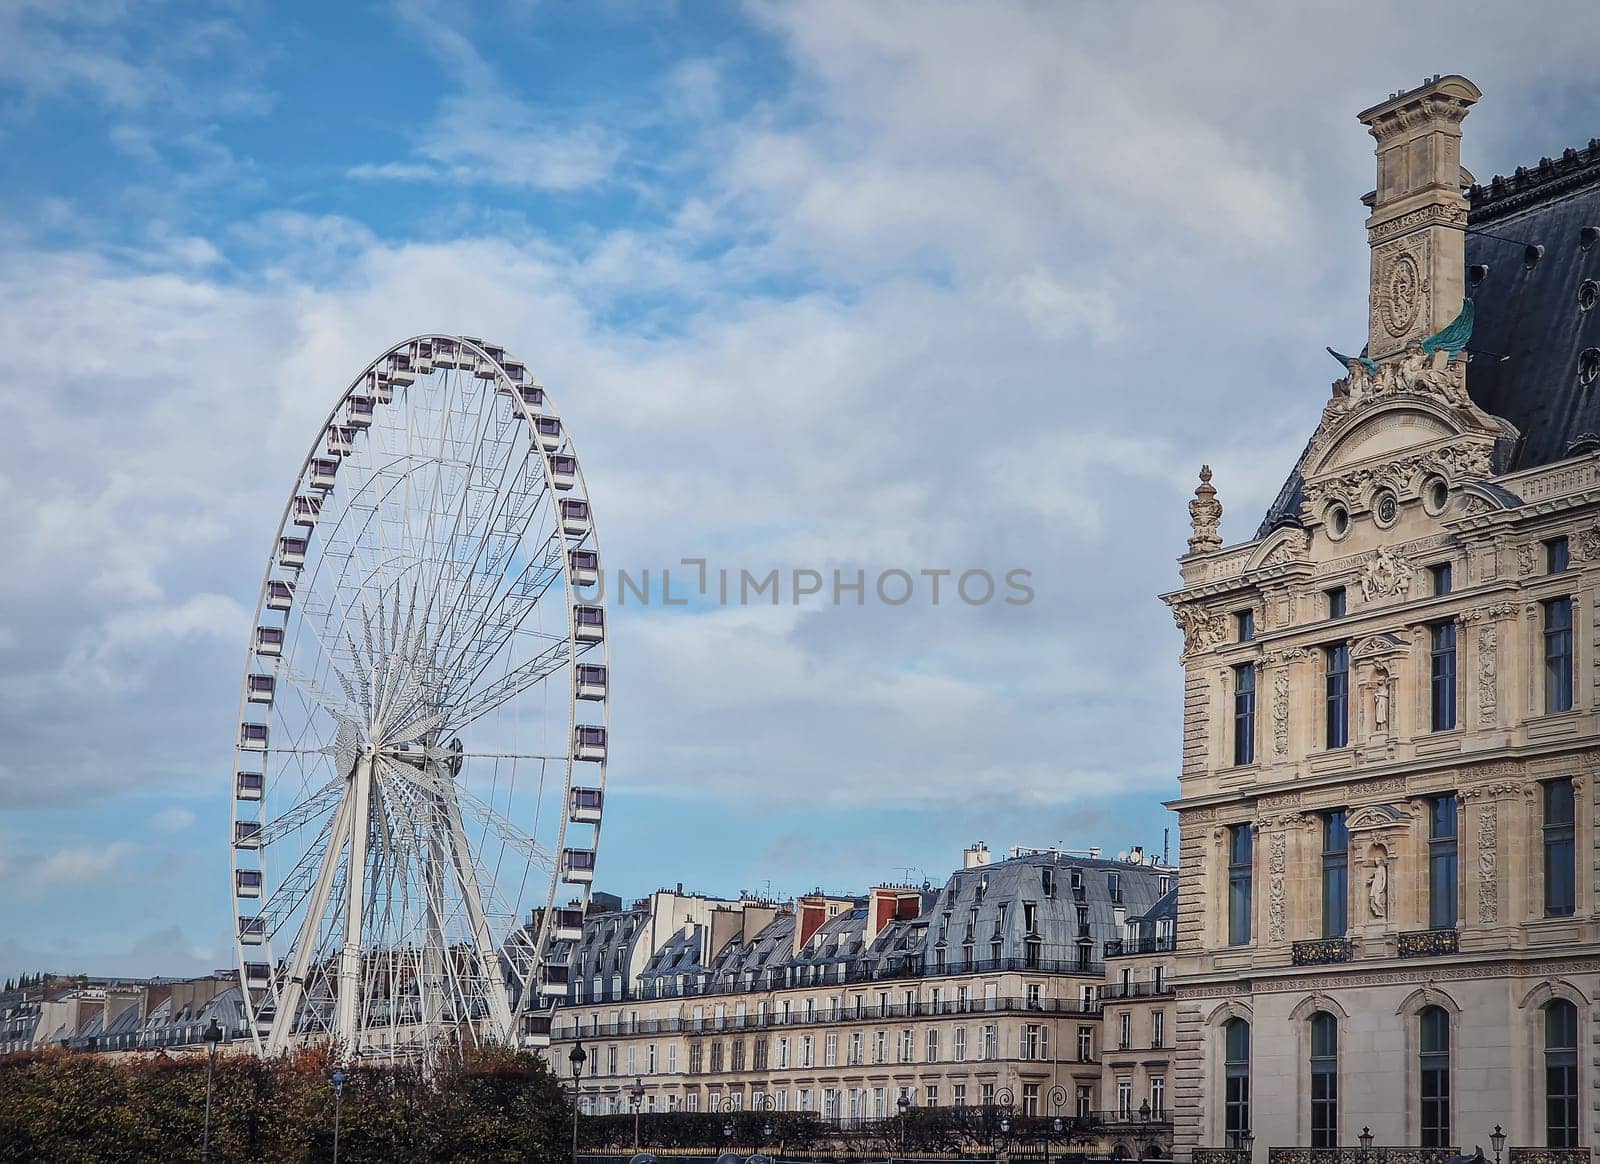 Grande Roue de Paris ferris wheel next to Louvre museum building and parisian houses, France by psychoshadow